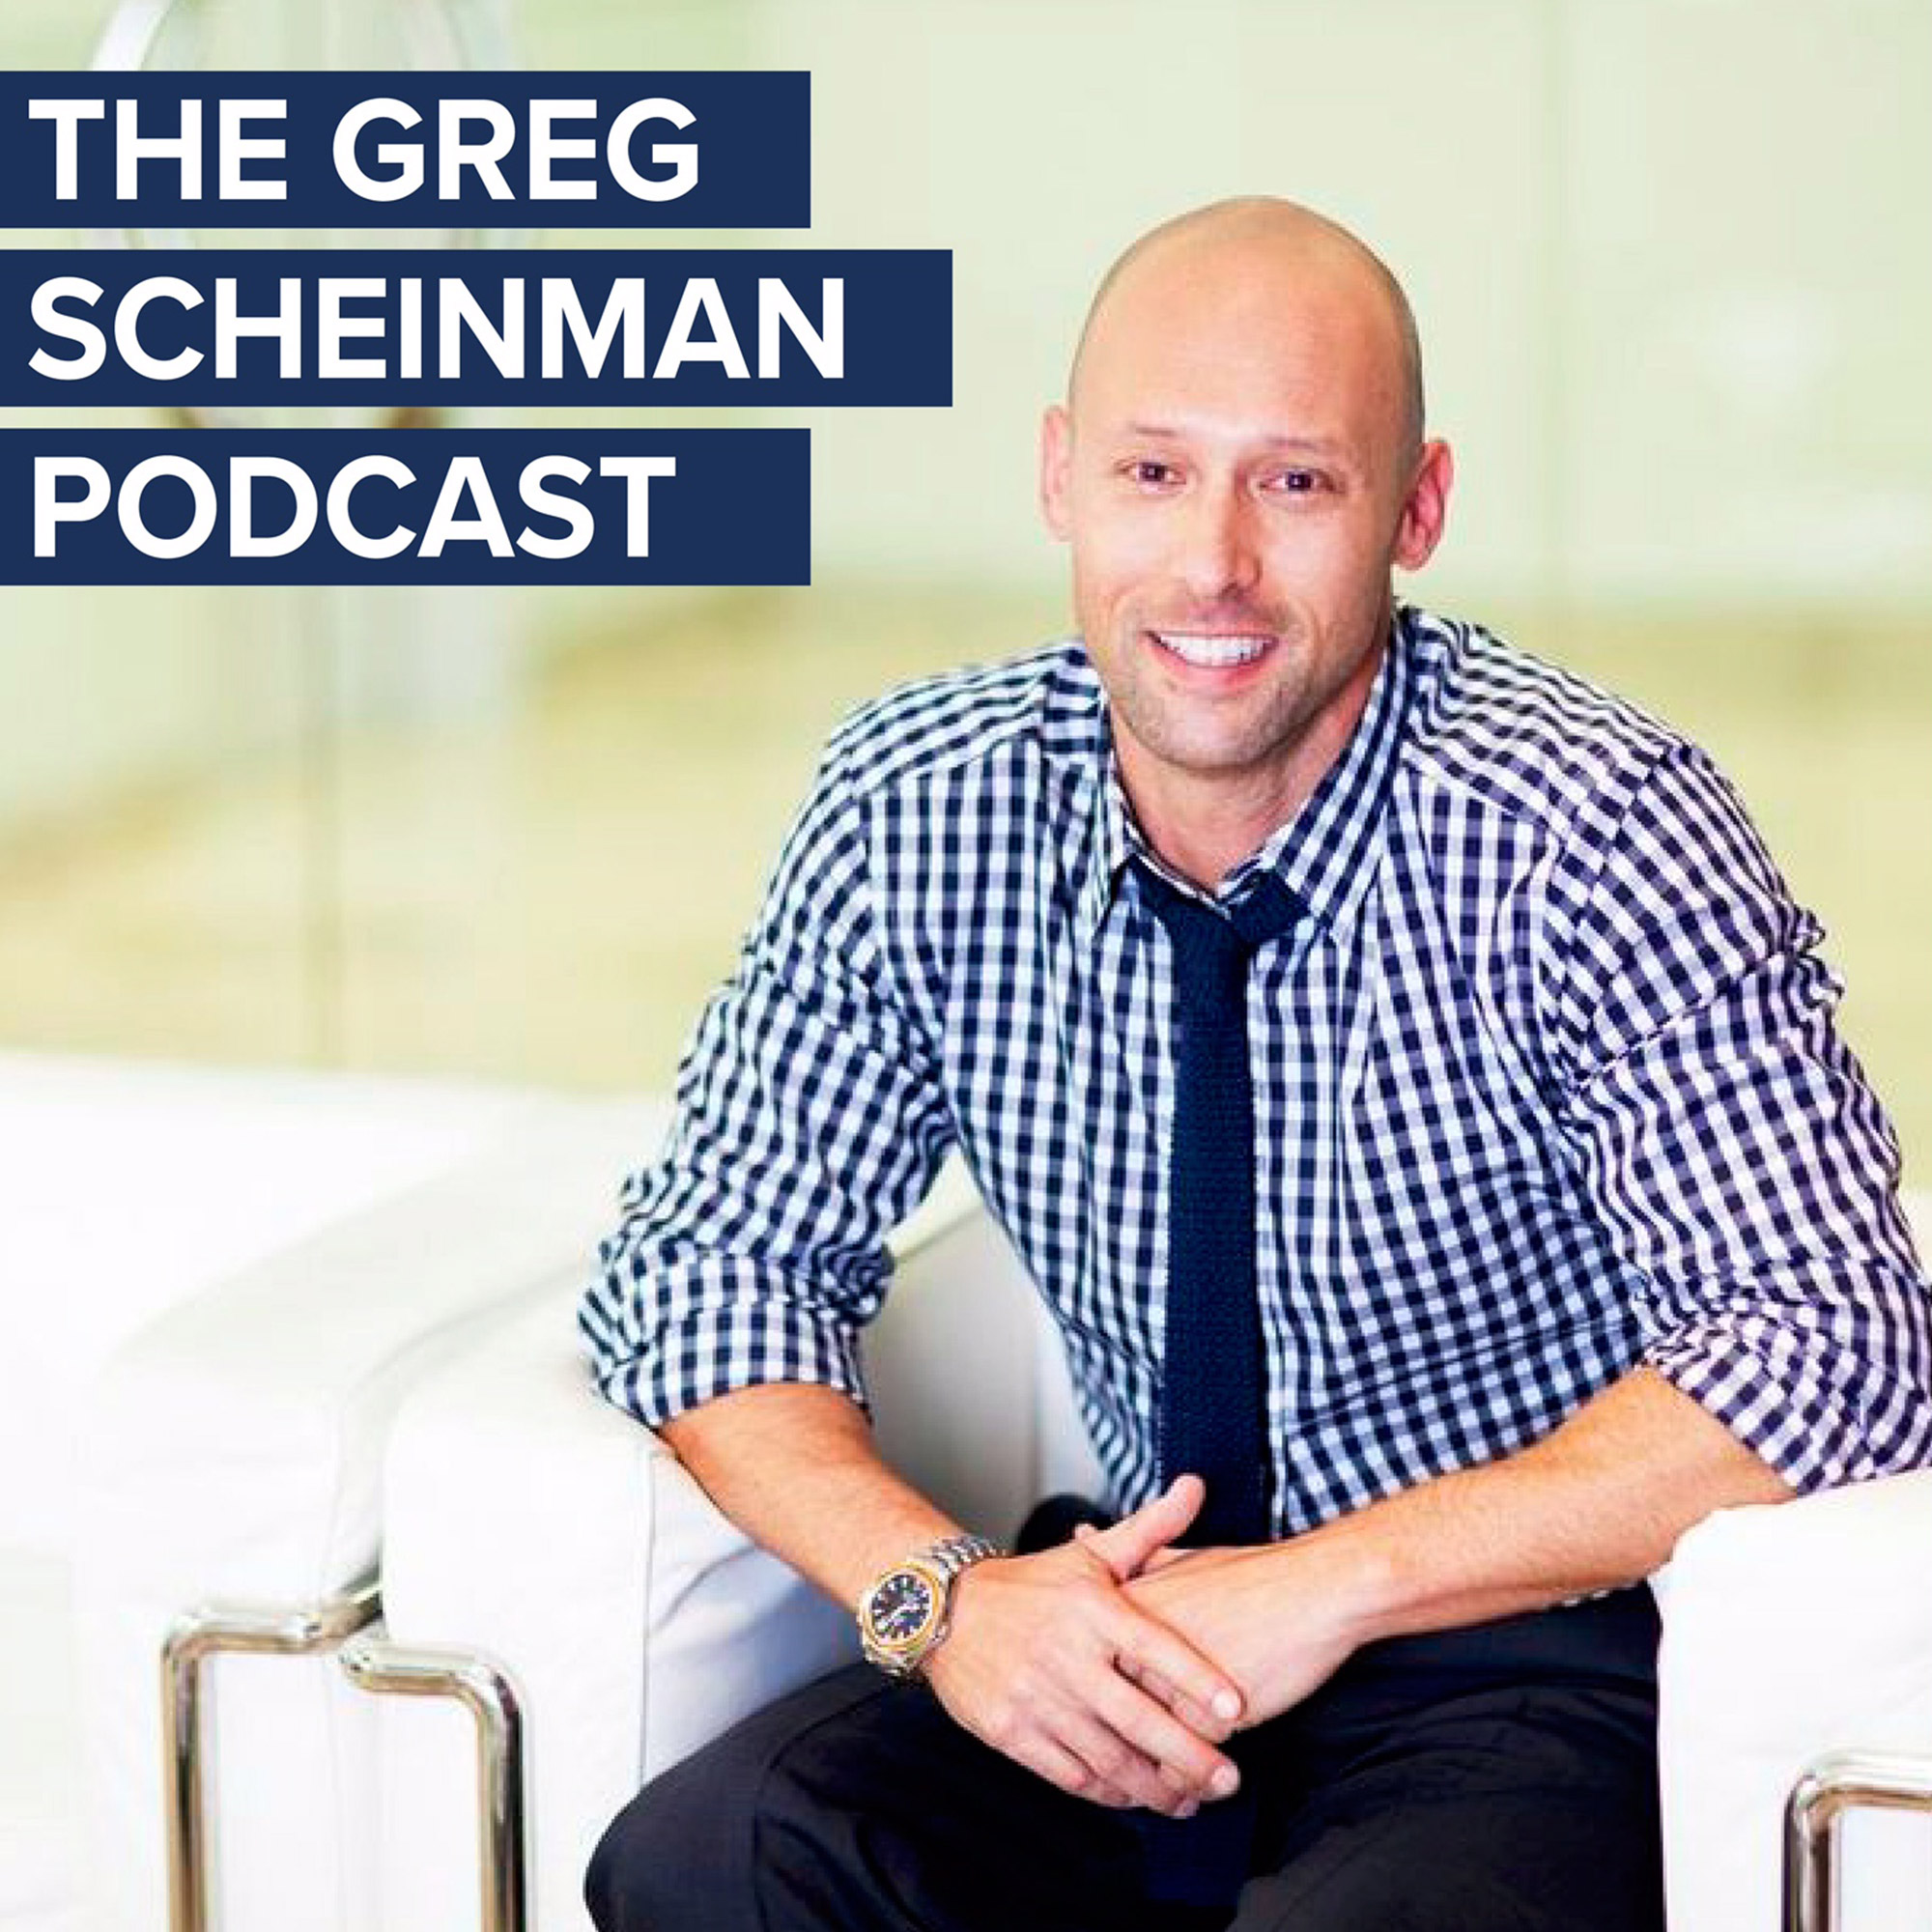 The Greg Scheinman Podcast